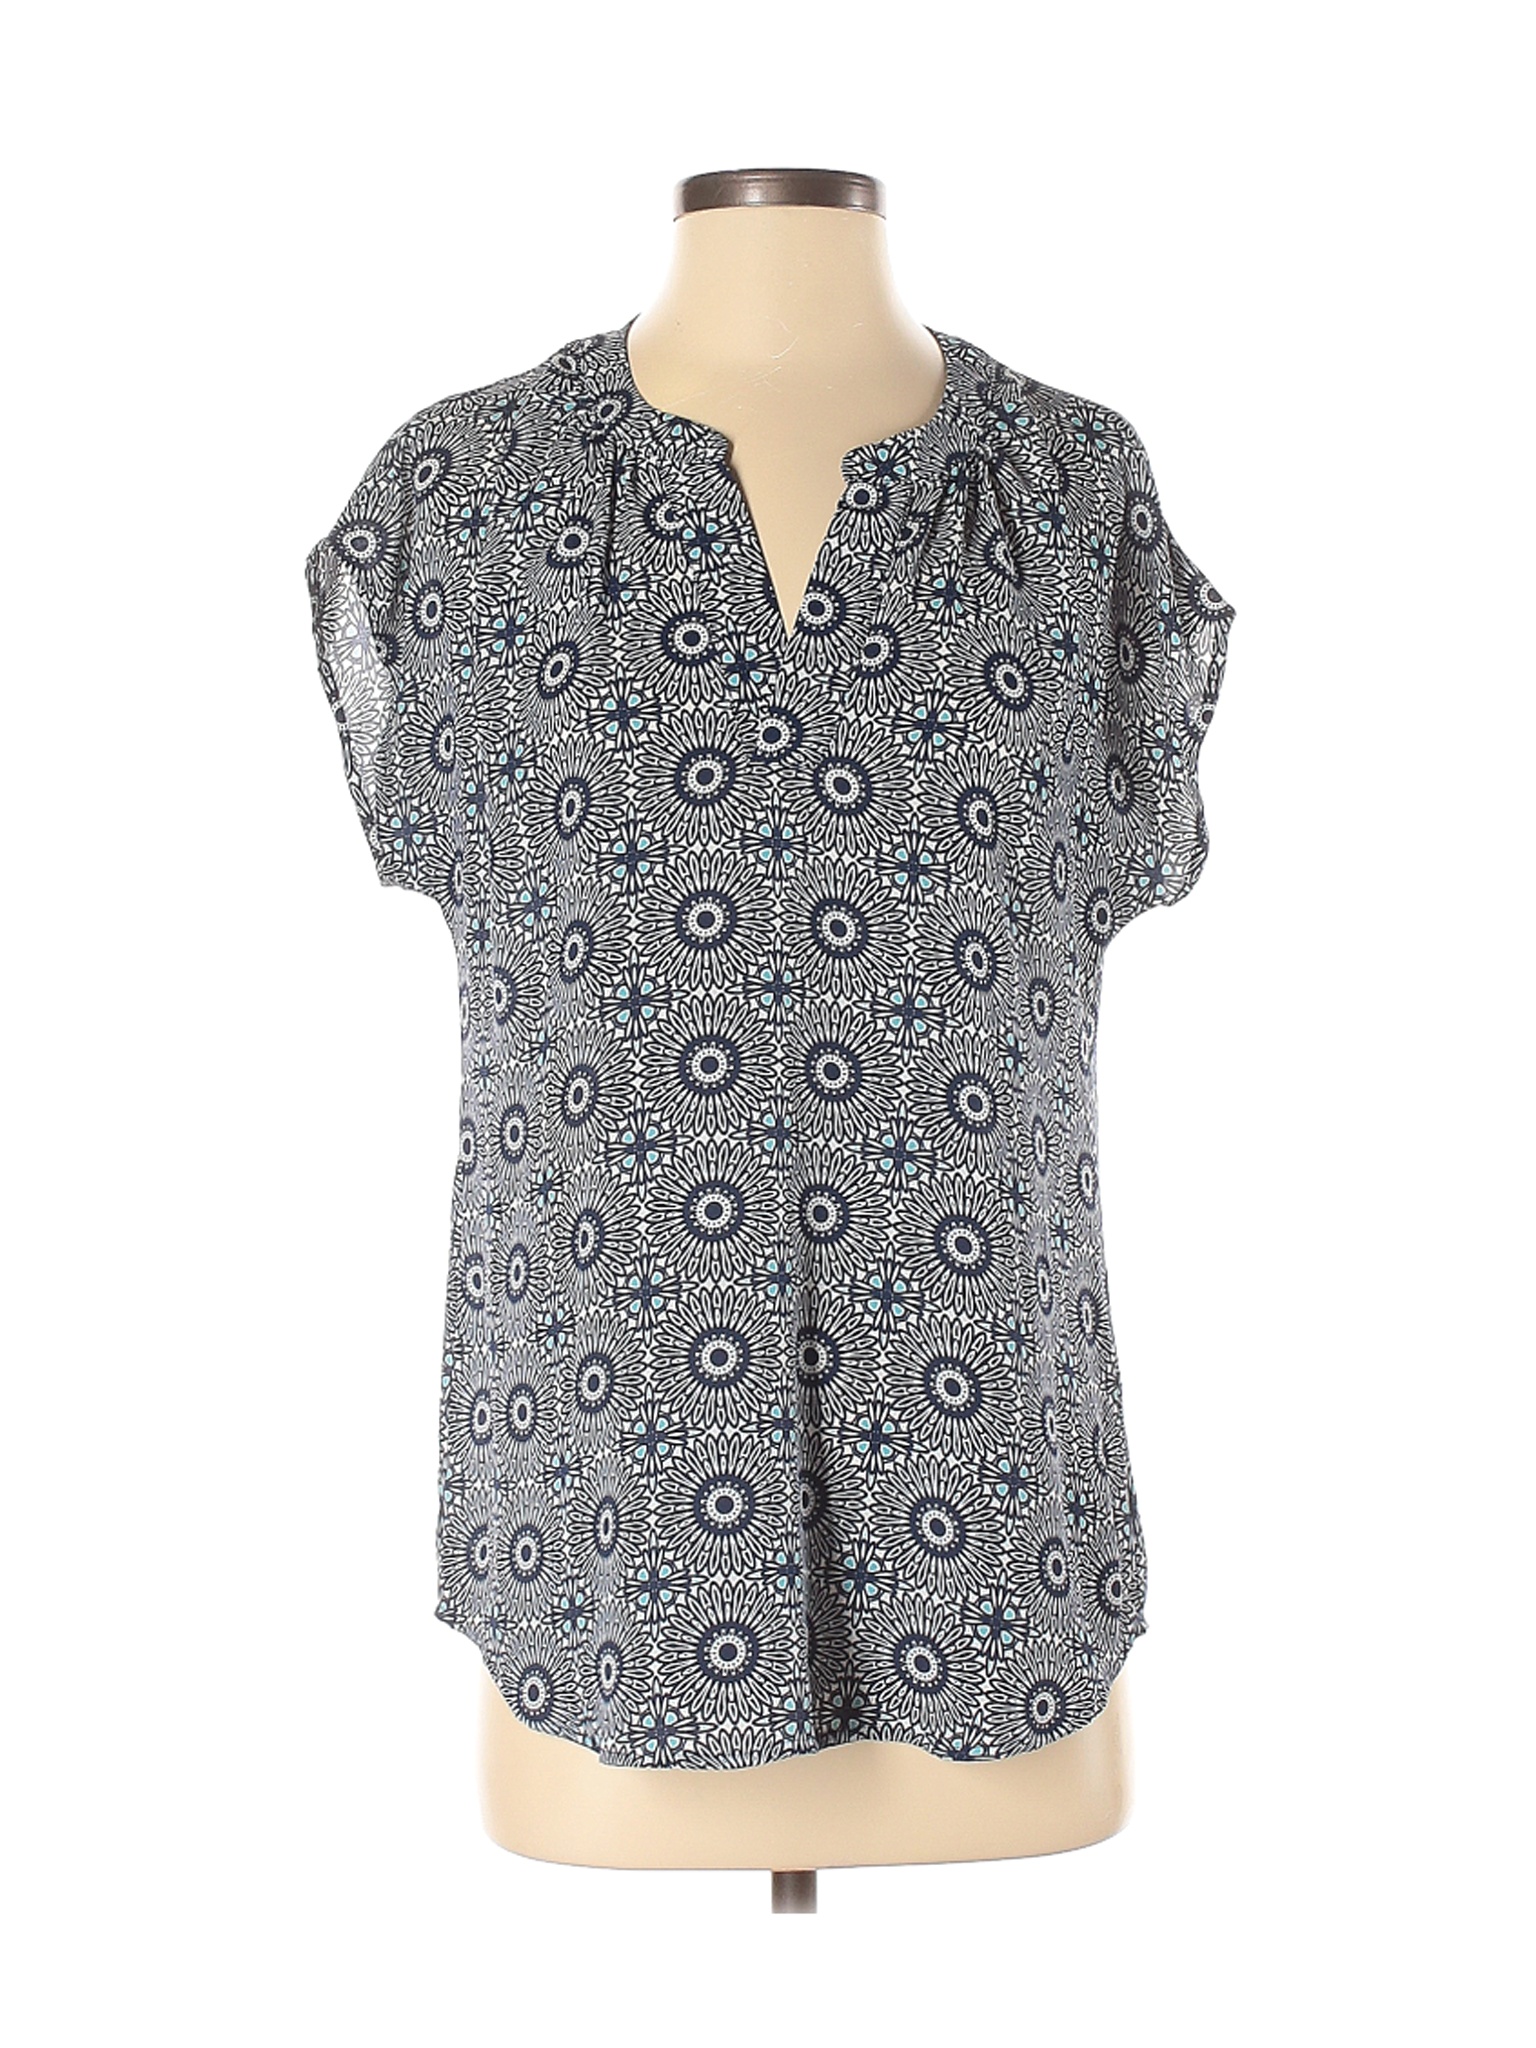 Roz & Ali Women Gray Short Sleeve Blouse S | eBay